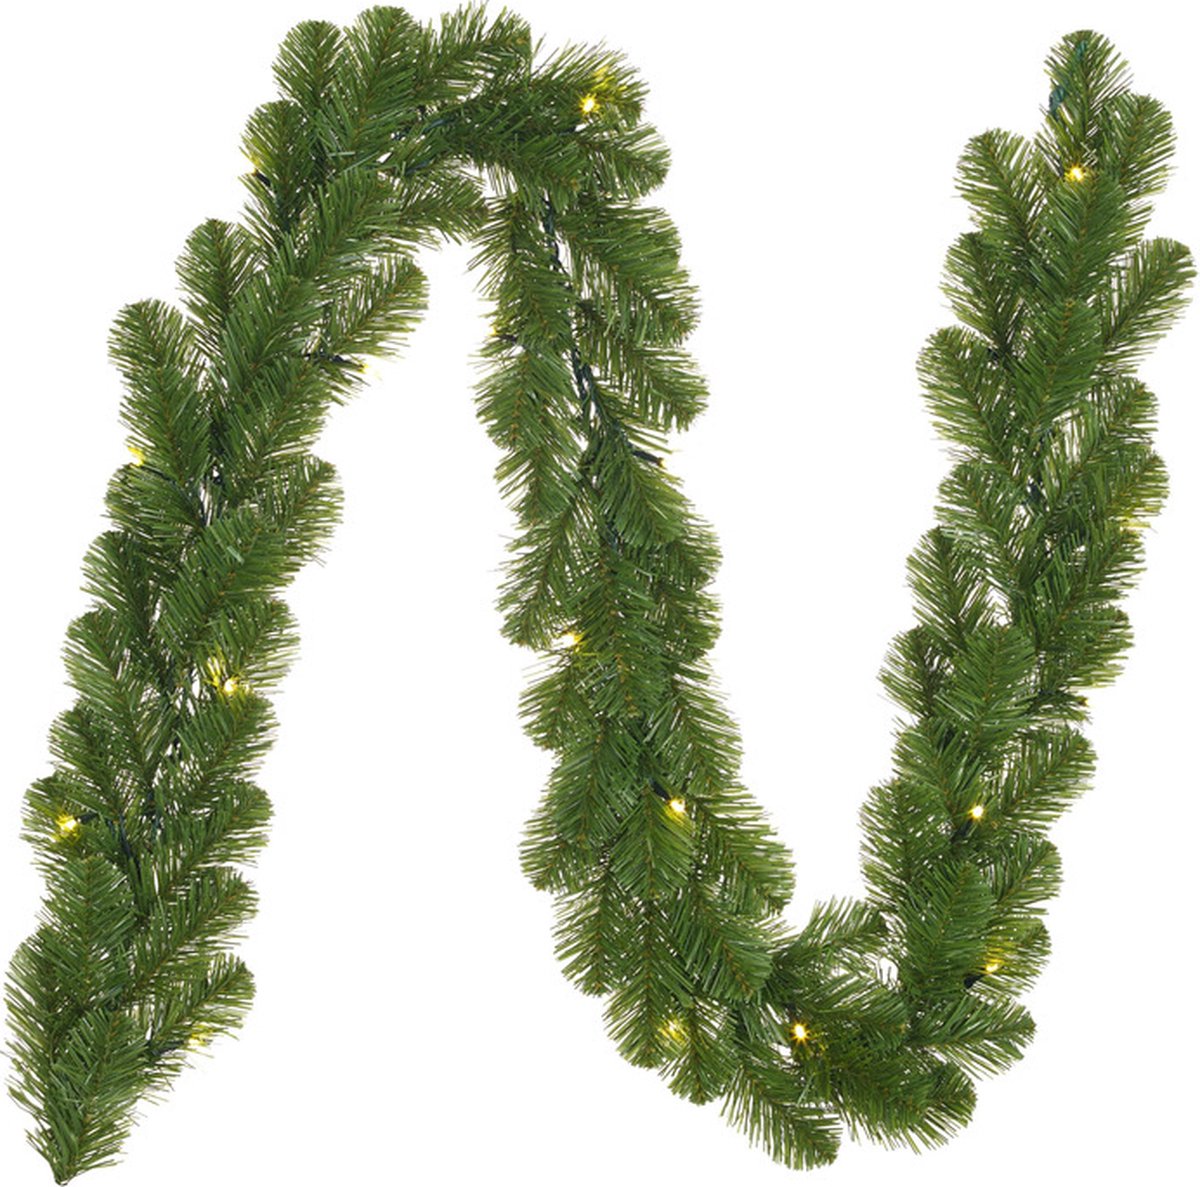 3x stuks dennenslingers groen met verlichting 20 x 270 cm - Kerstslingers / dennen takken slingers